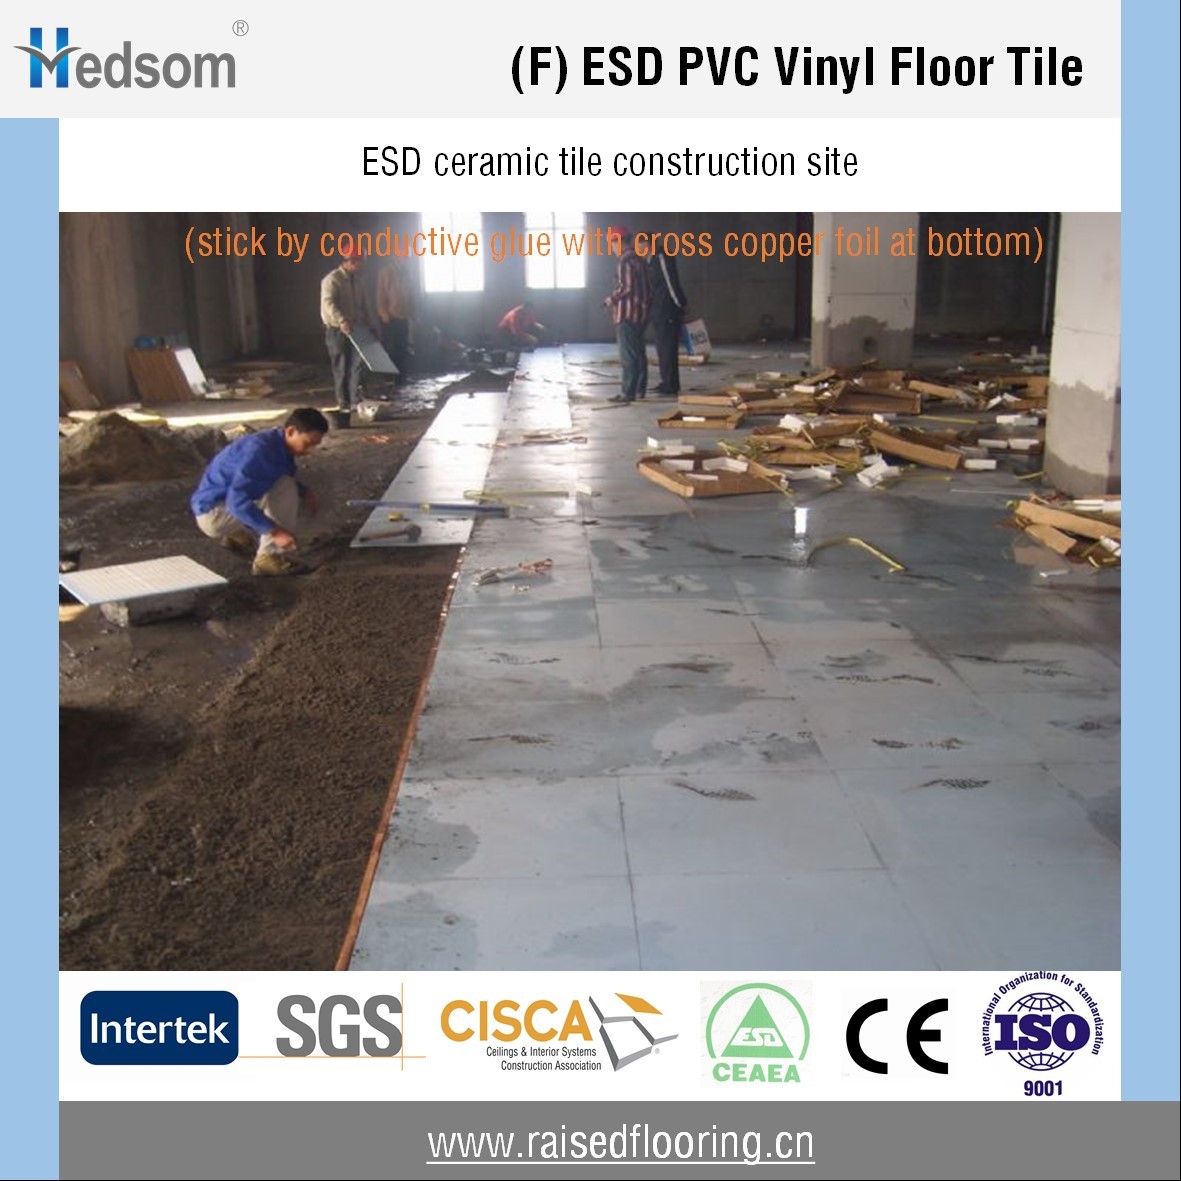 ESD Ceramic tile floor